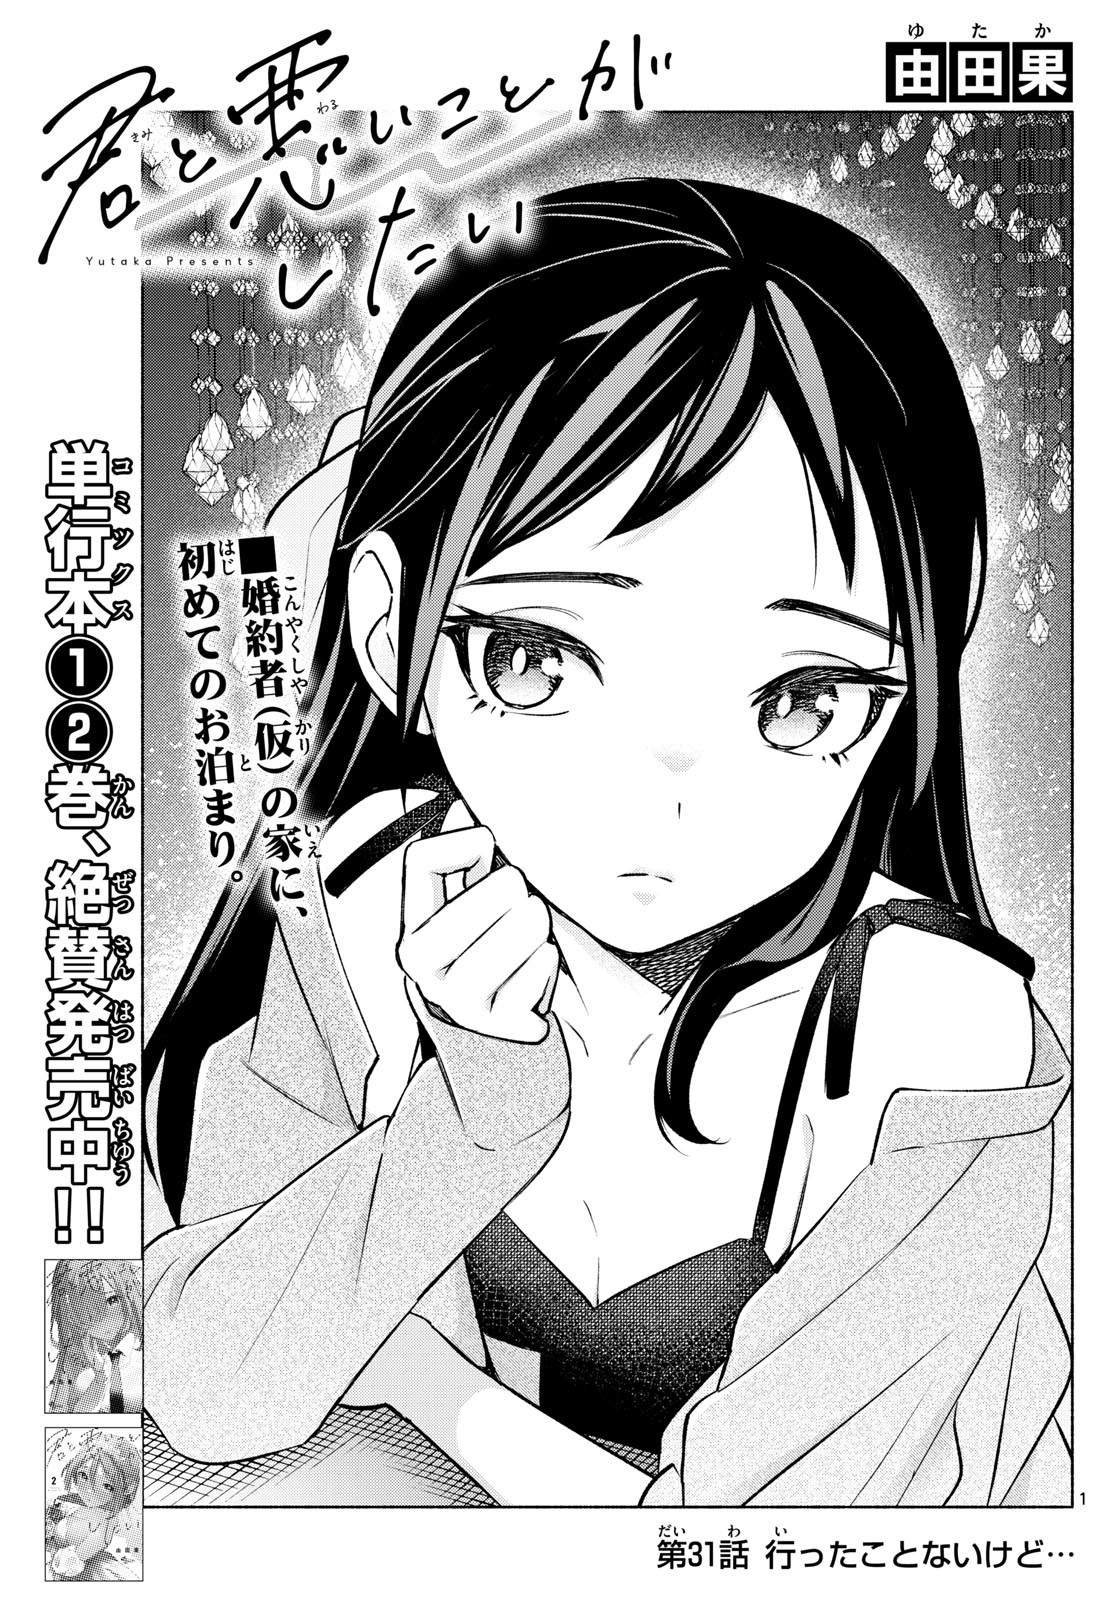 Kimi to Warui Koto ga Shitai - Chapter 031 - Page 1